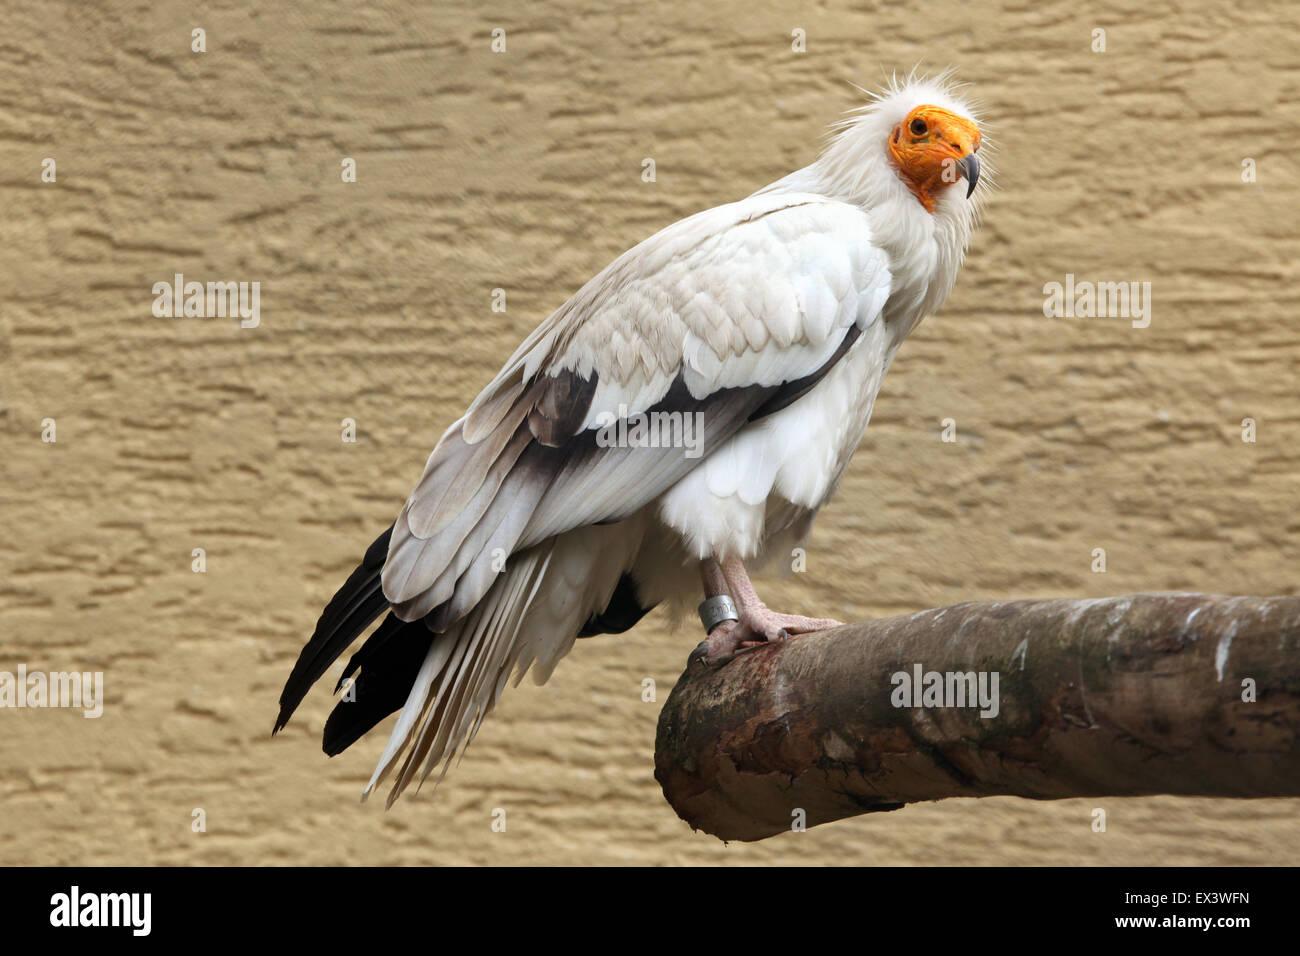 Percnoptère (Neophron percnopterus), également connu sous le nom de vautour charognard blanc au zoo de Francfort, Allemagne. Banque D'Images